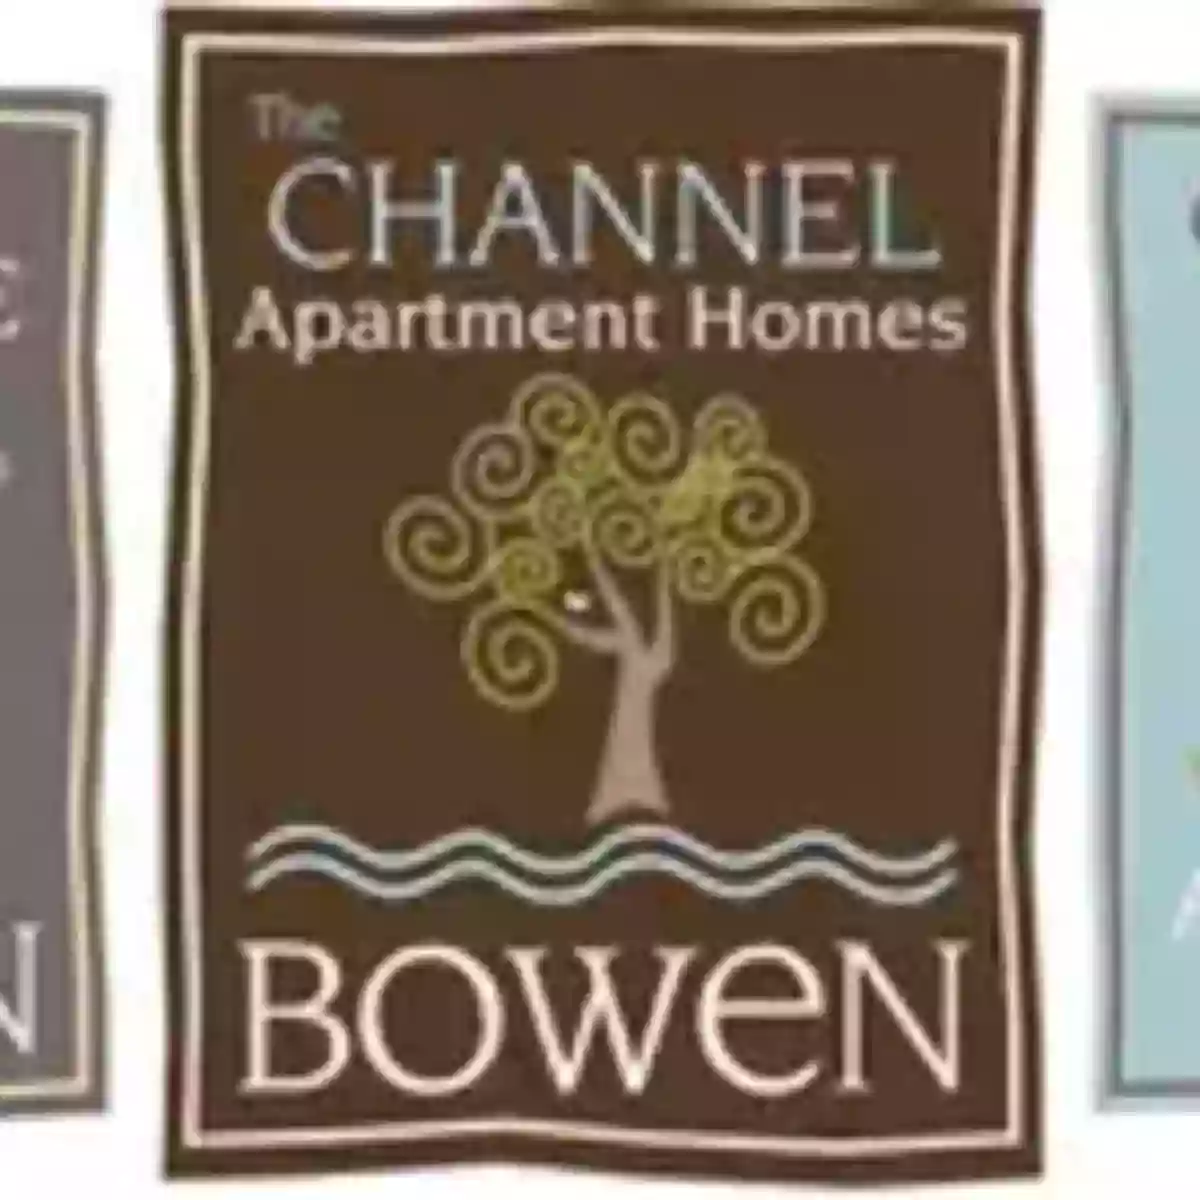 Channel Bowen